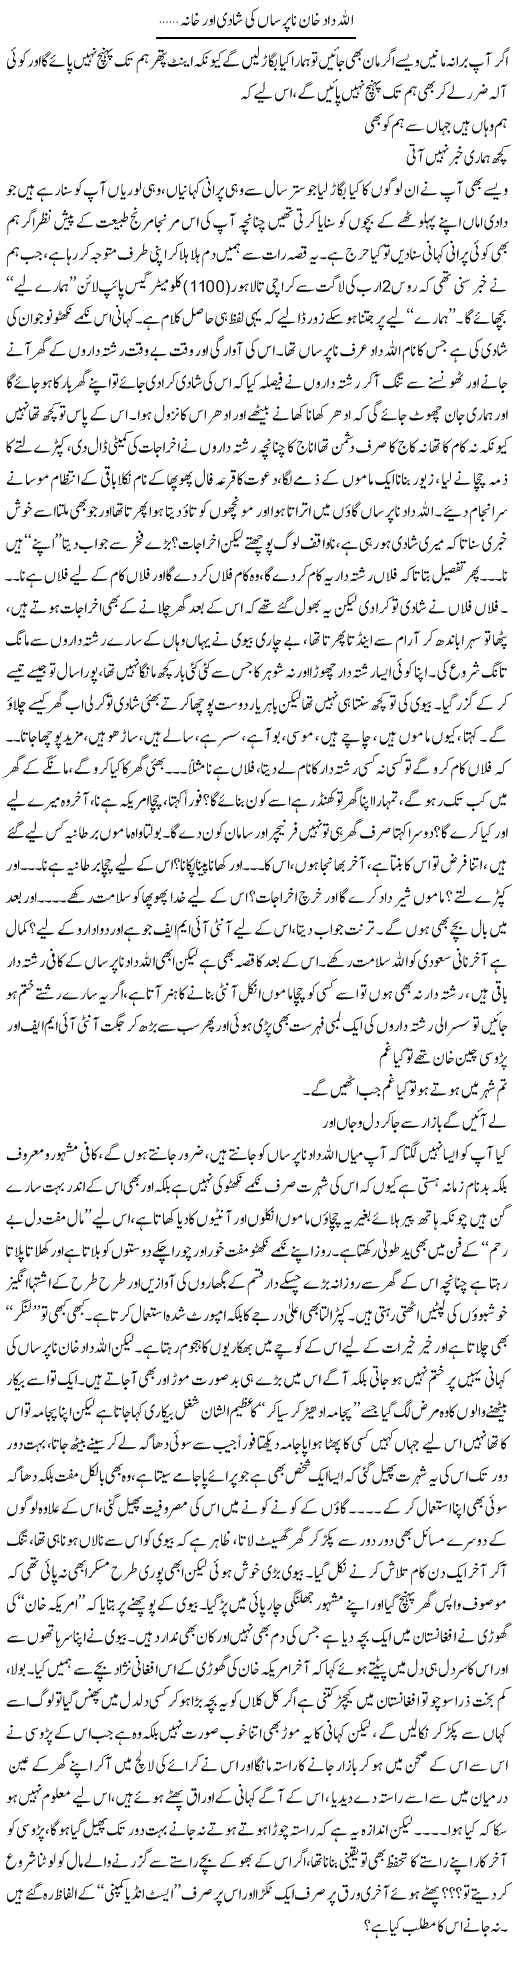 Allah Daad Khan Napursan Ki Shadi Aur Khanah | Saad Ullah Jan Barq | Daily Urdu Columns